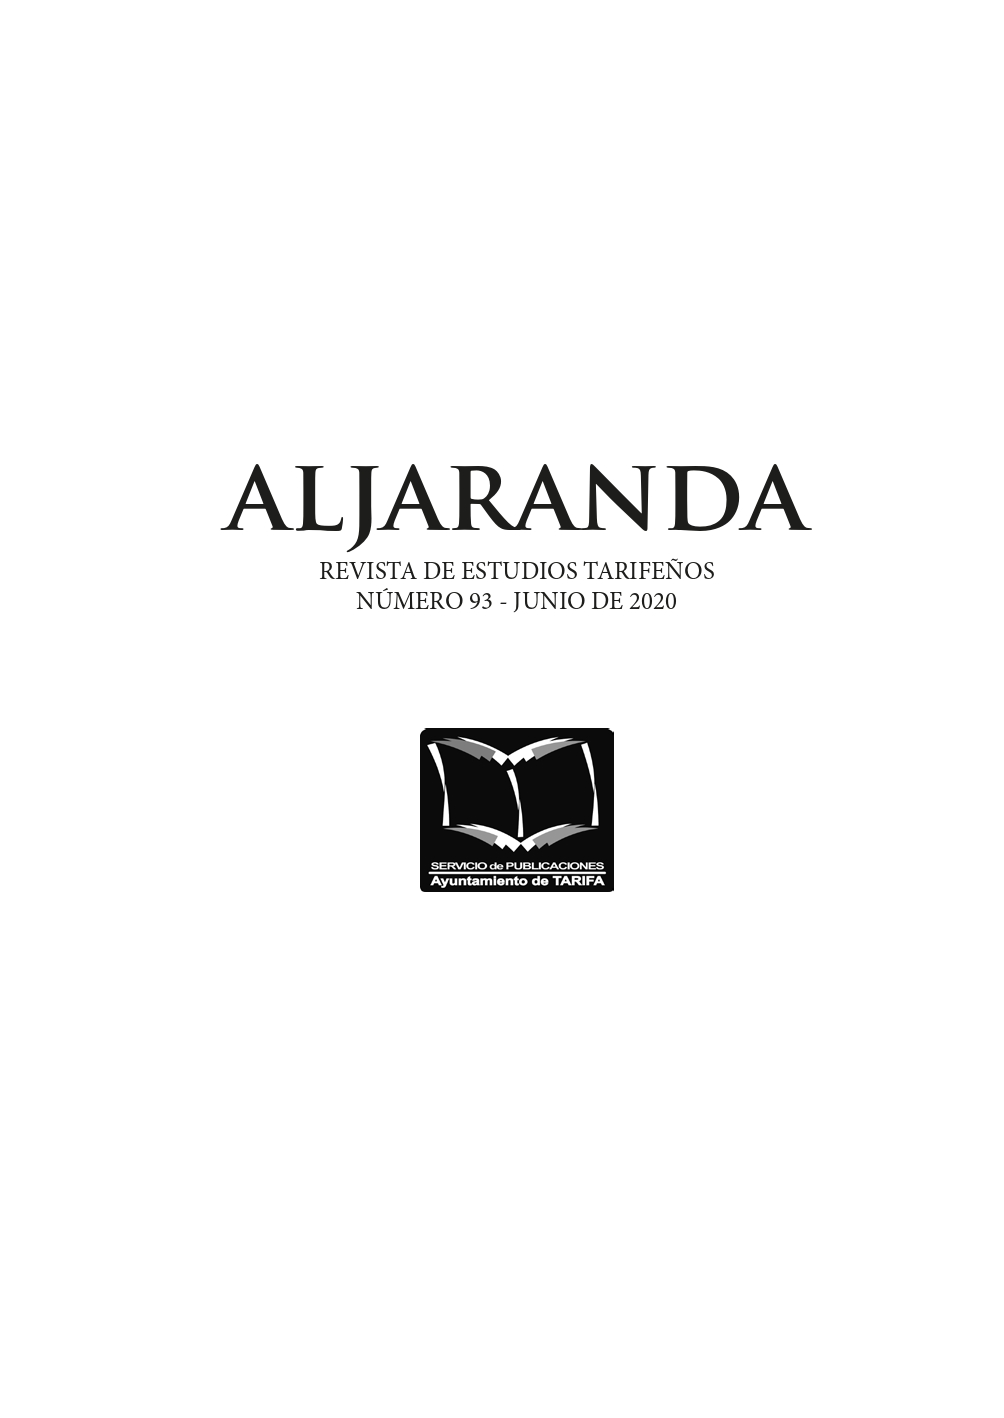 Imagen de portada de la revista Aljaranda